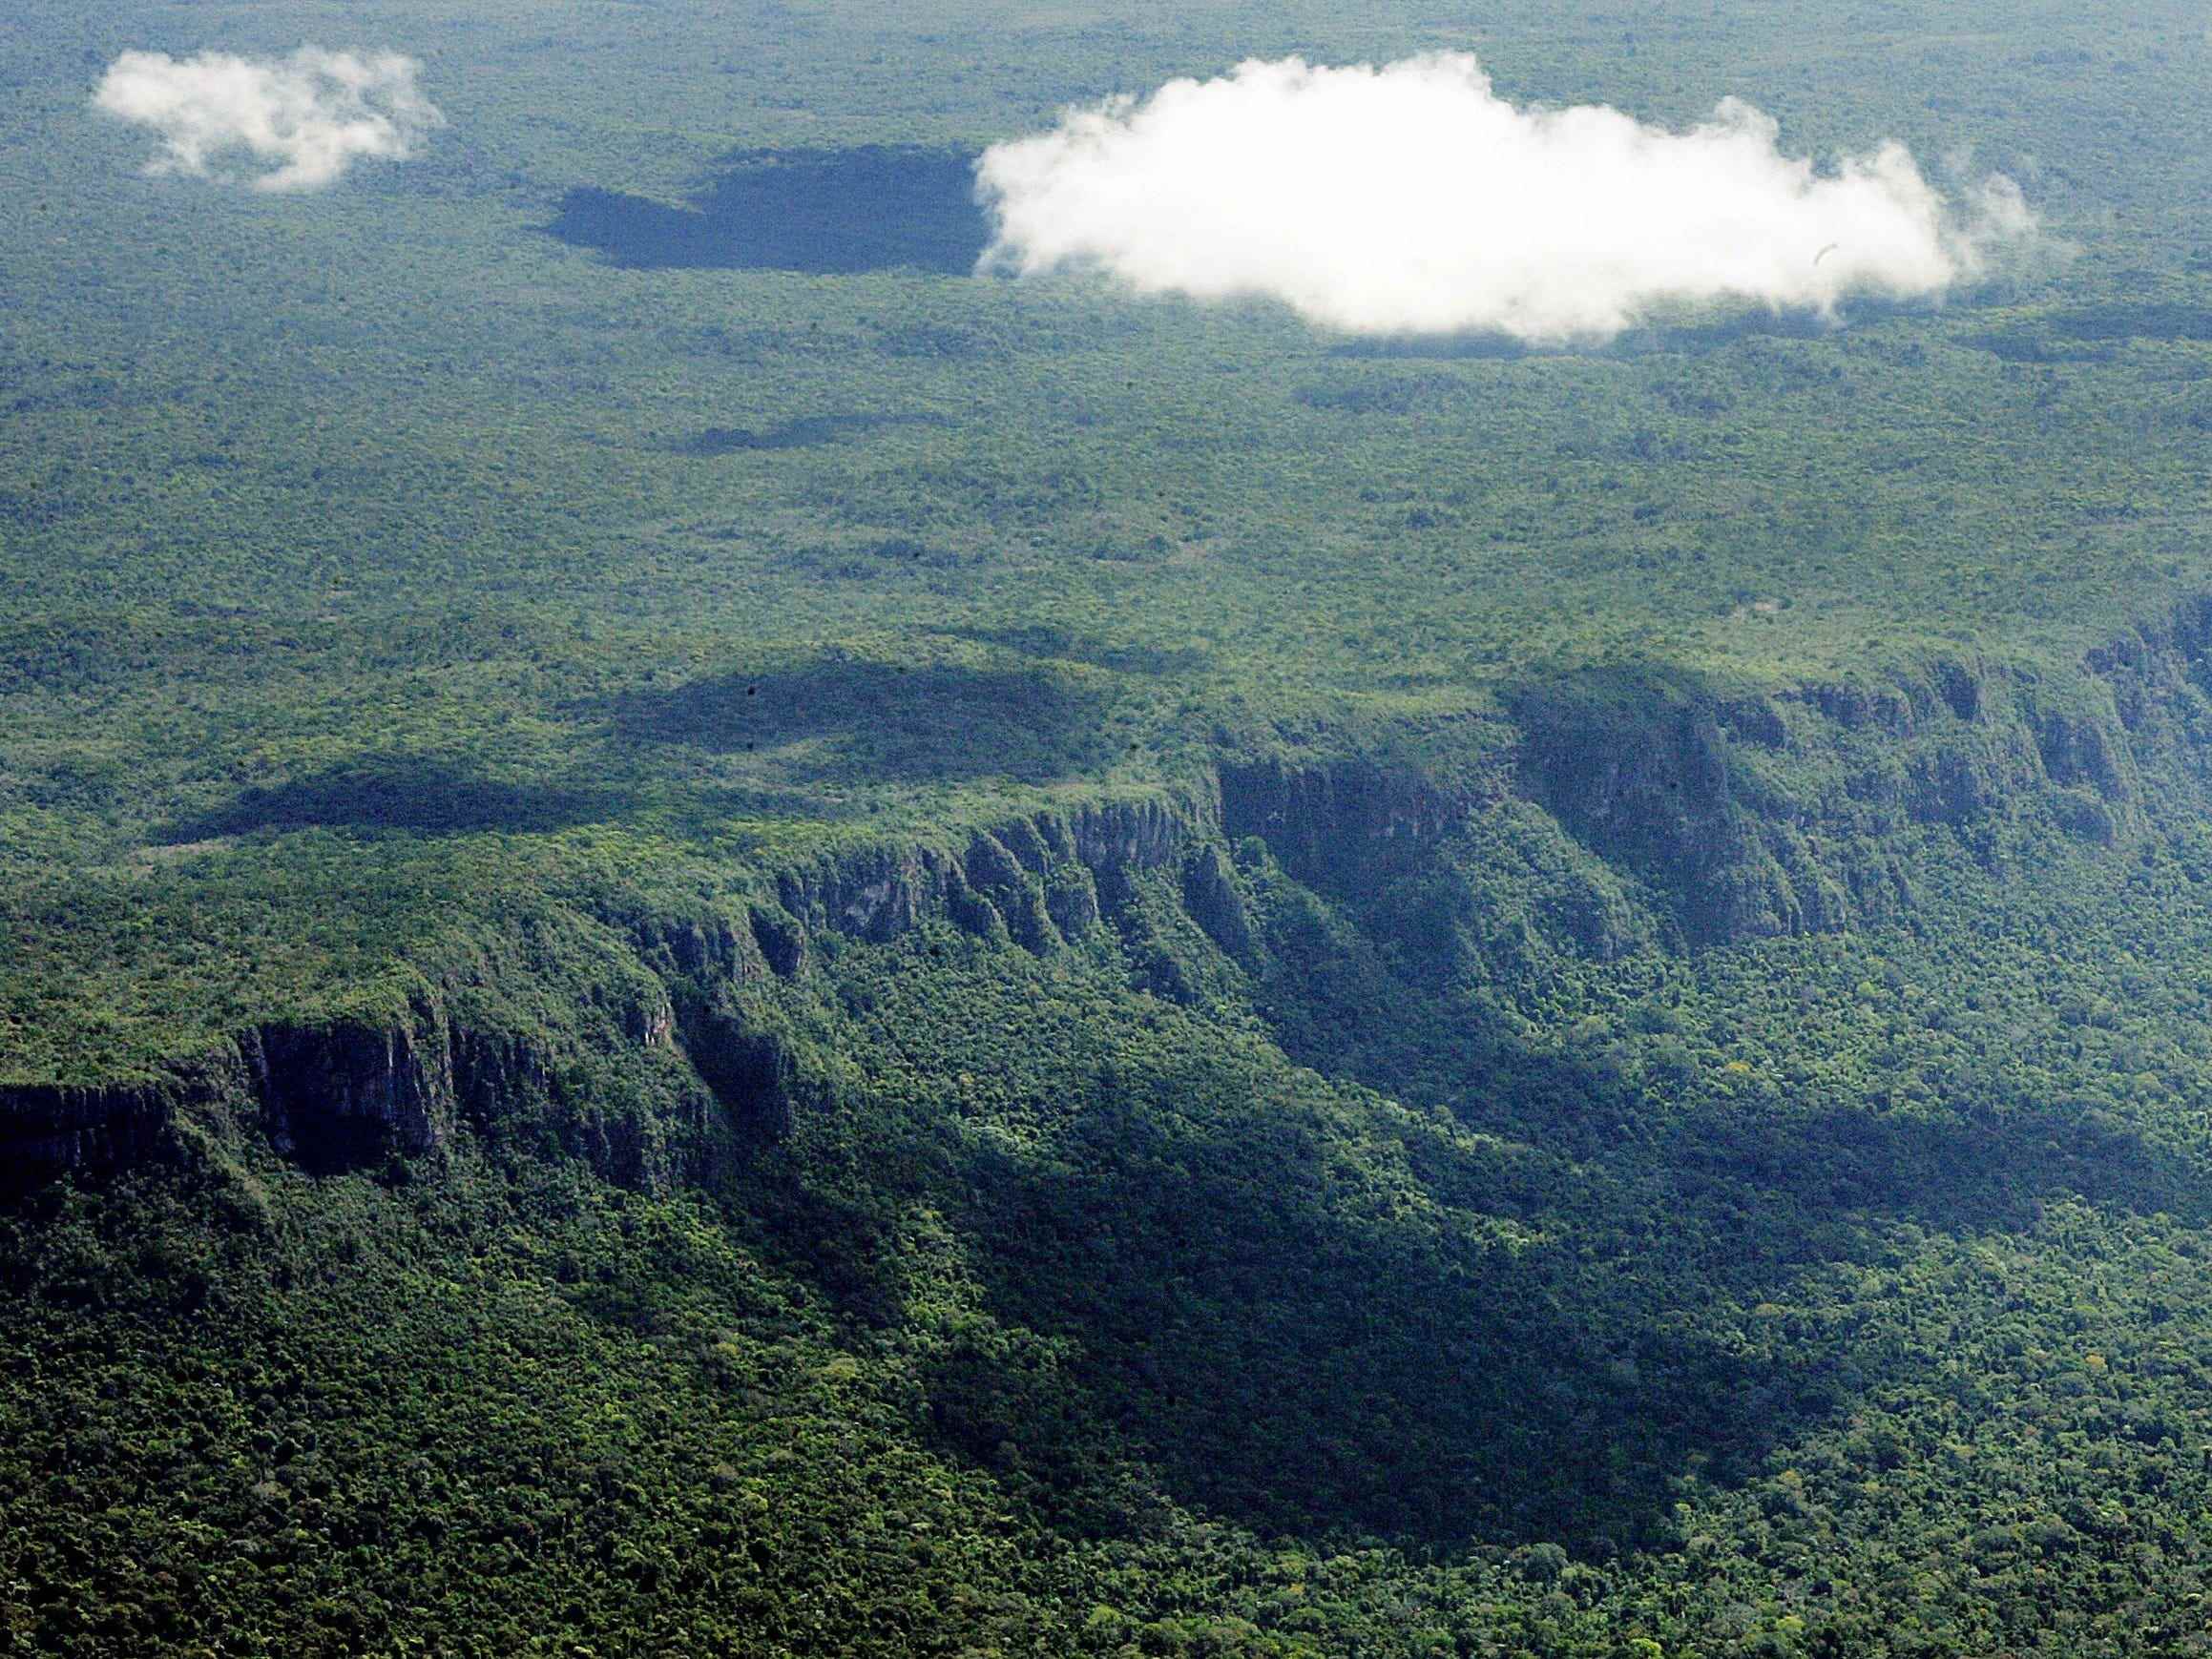 Amazonas-Regenwald vor der Abholzung durch Brände